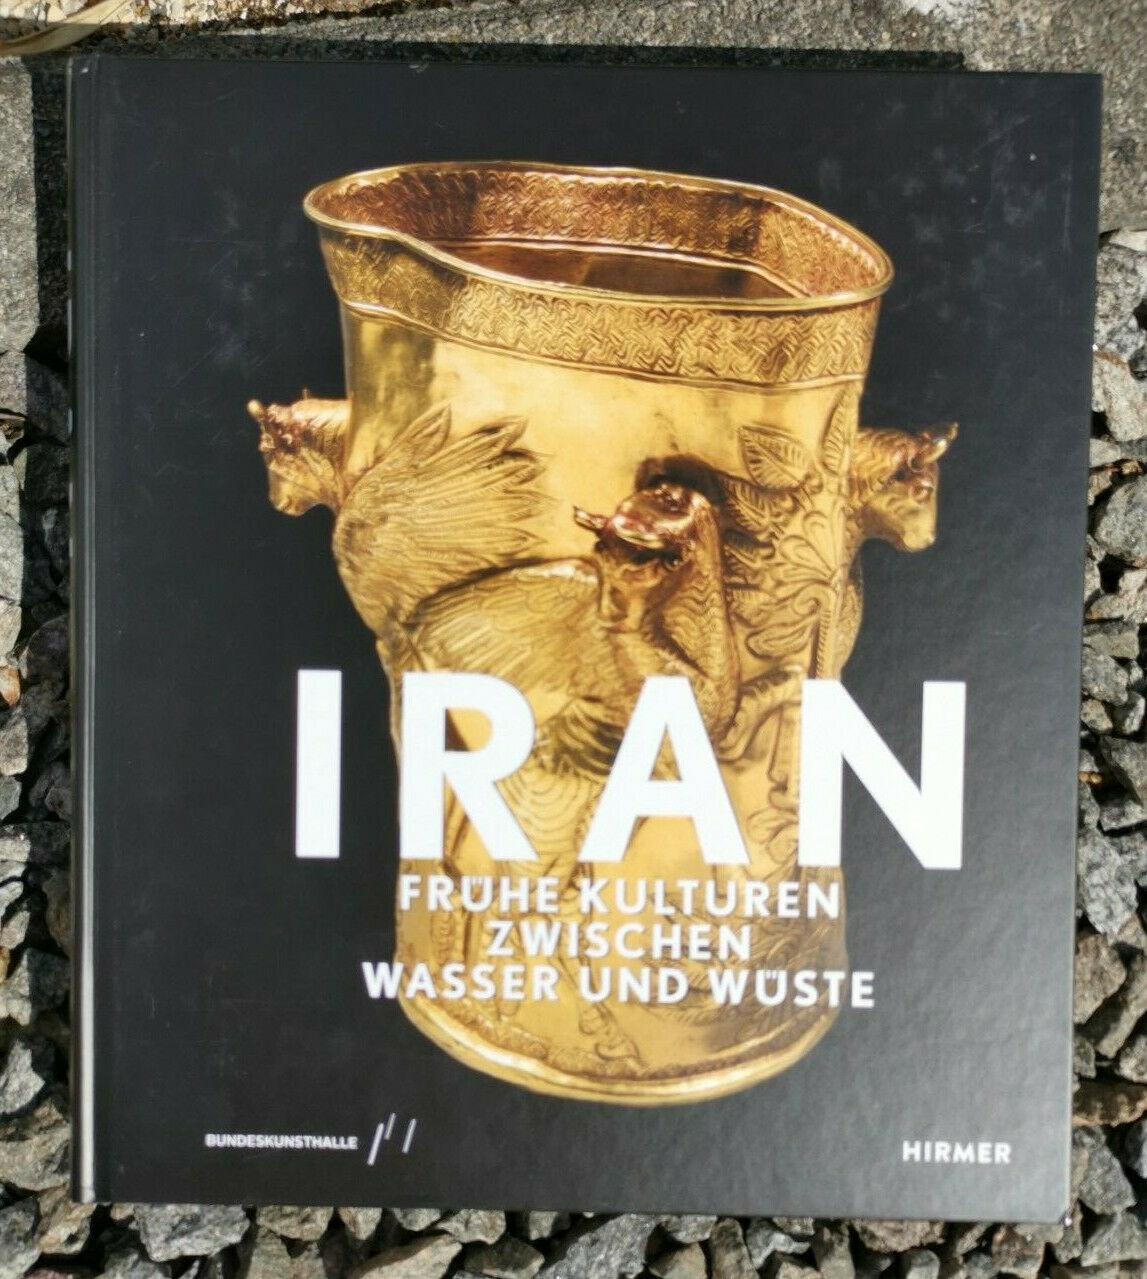 Iran: Fruhe Kulturen zwischen Wasser und Wuste [hardcover]